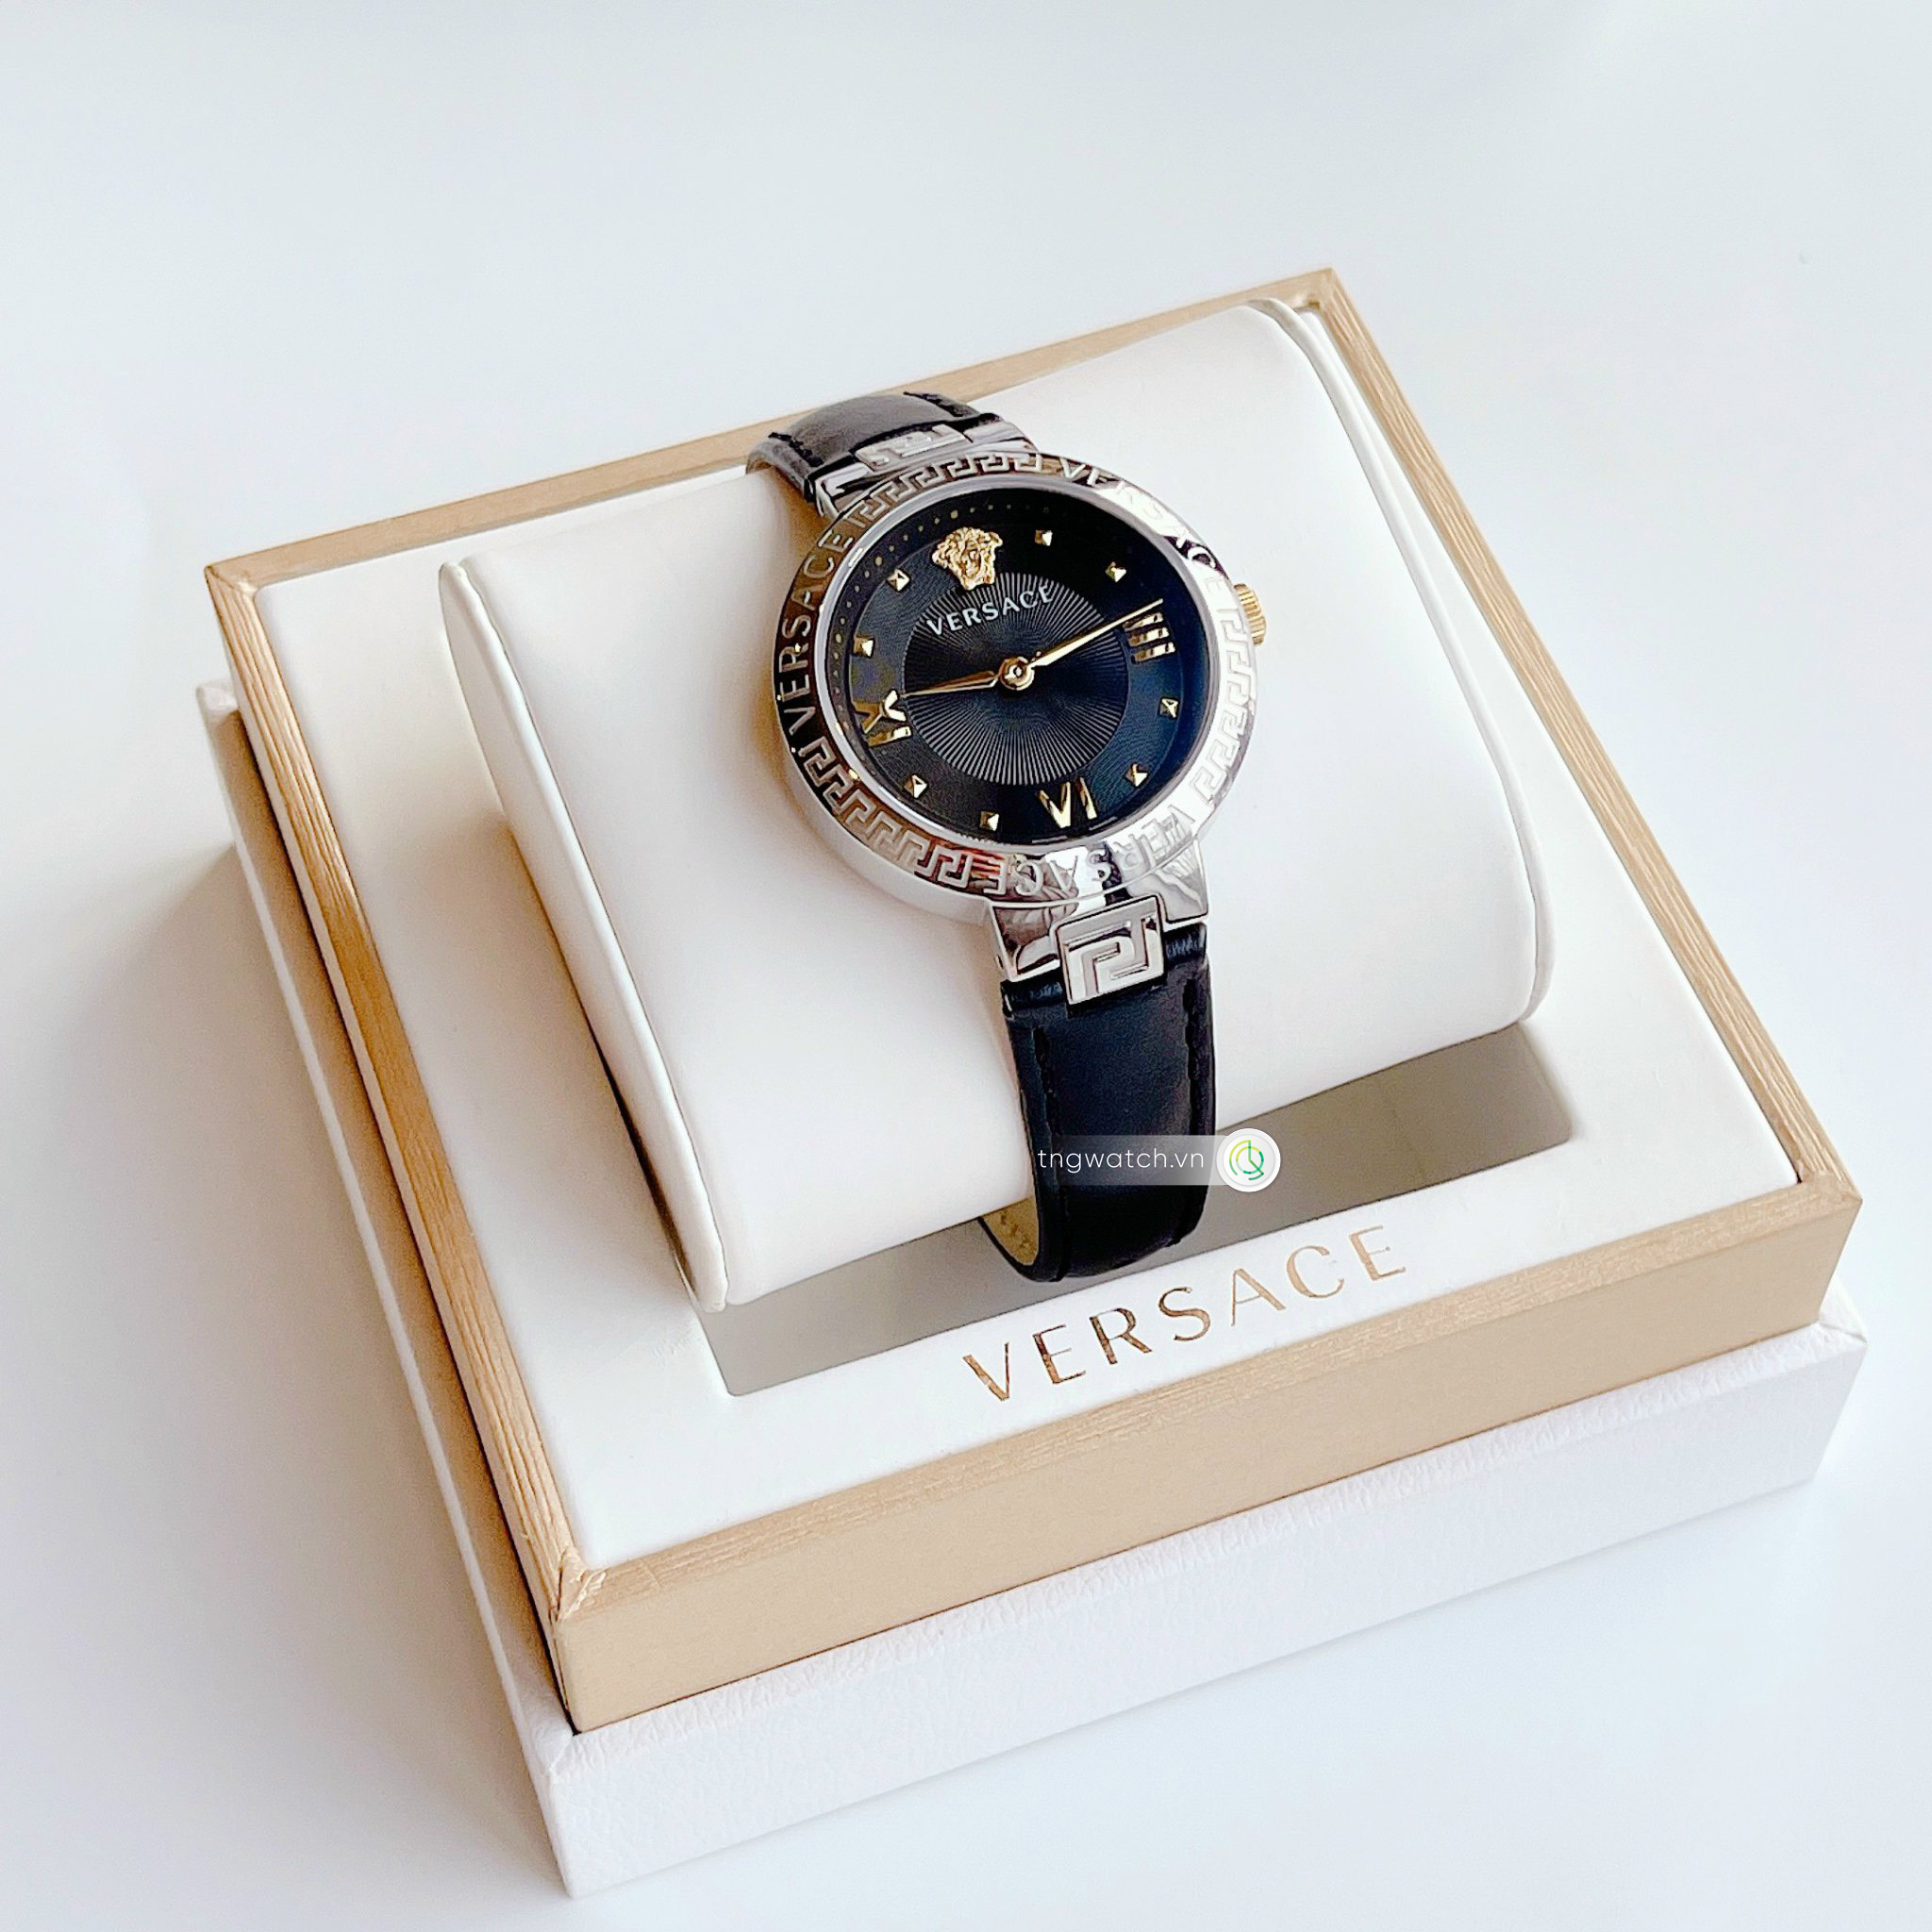 Đồng hồ Versace Greca Trap VE2K00221